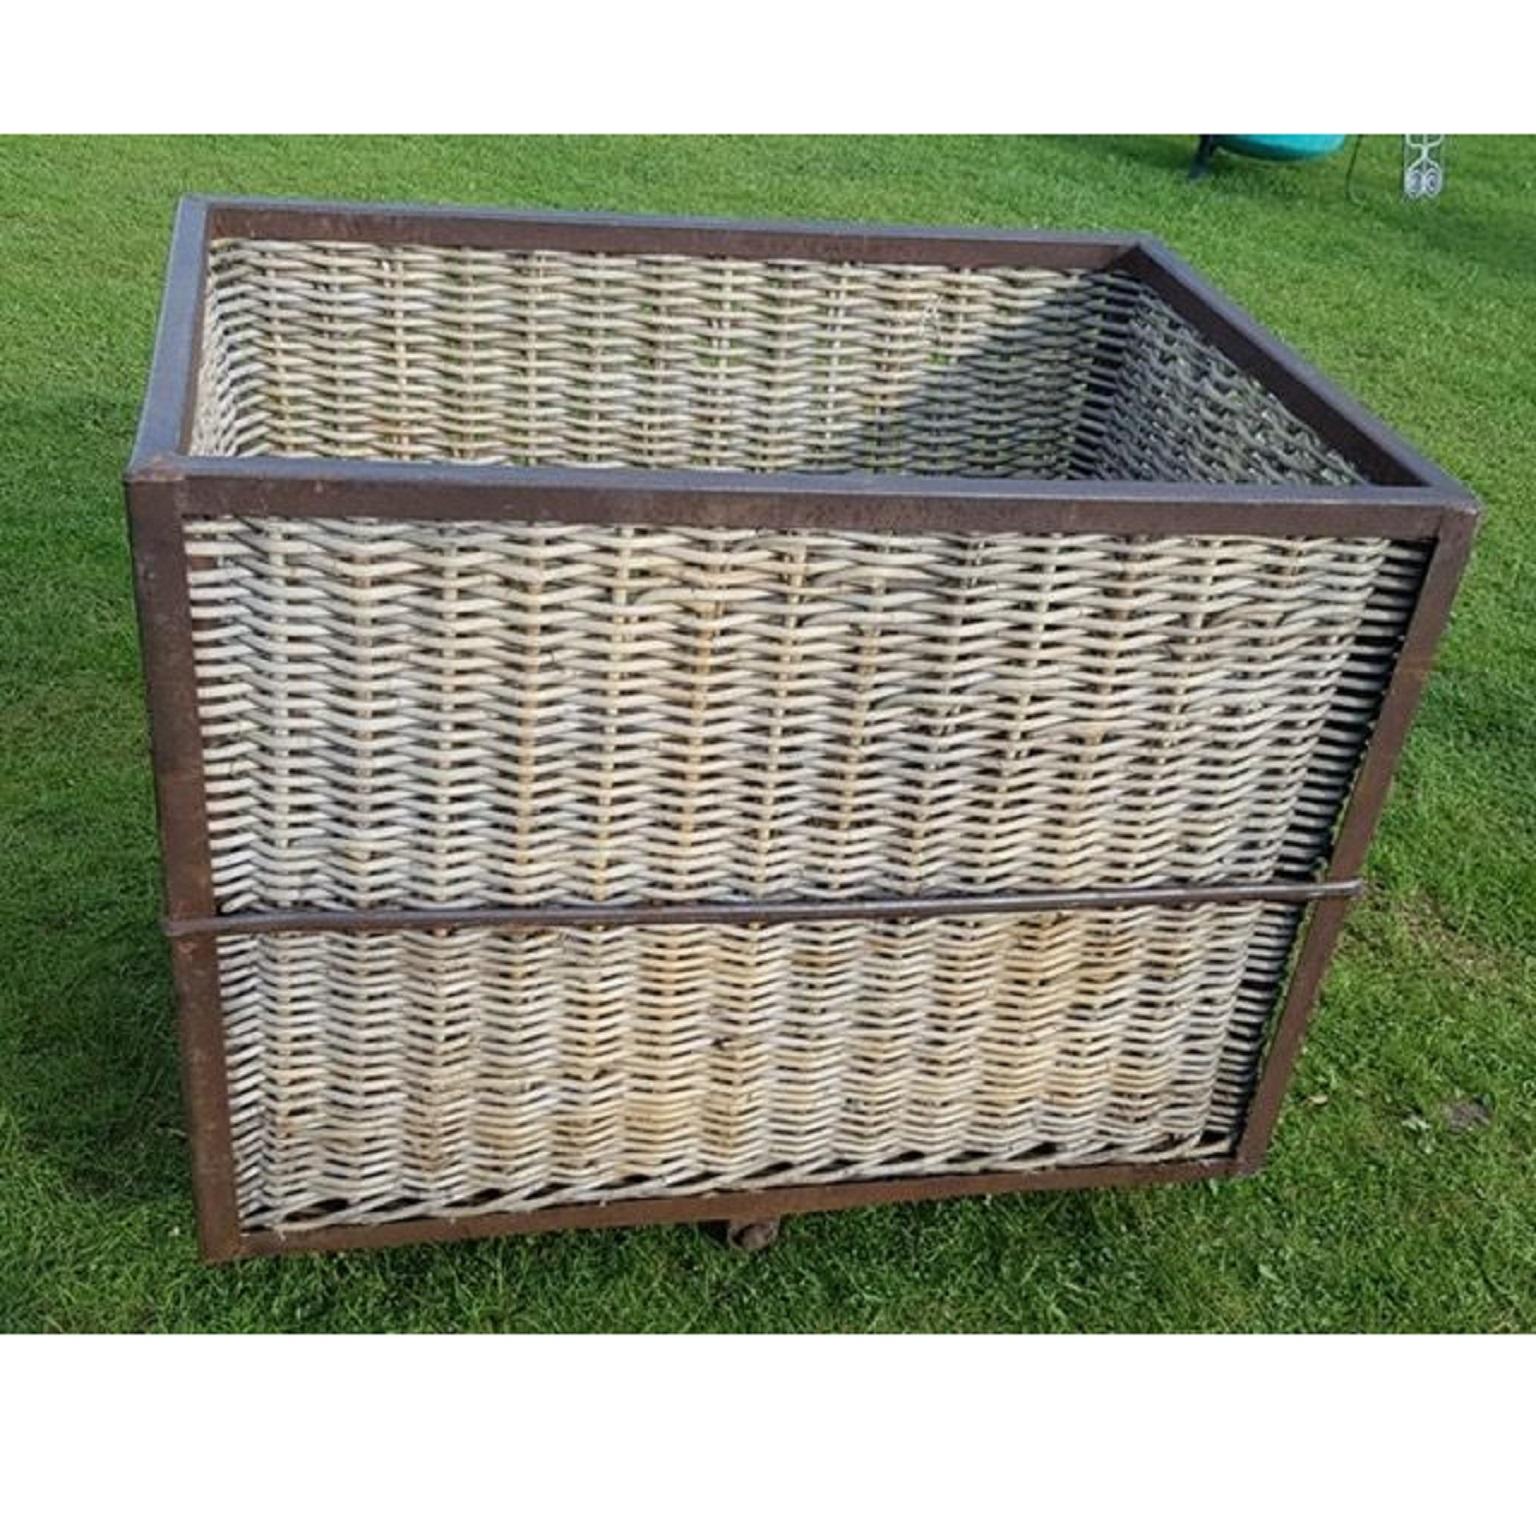 Industrial Vintage Steel Frame & Wicker Laundry Basket Bin on Wheels